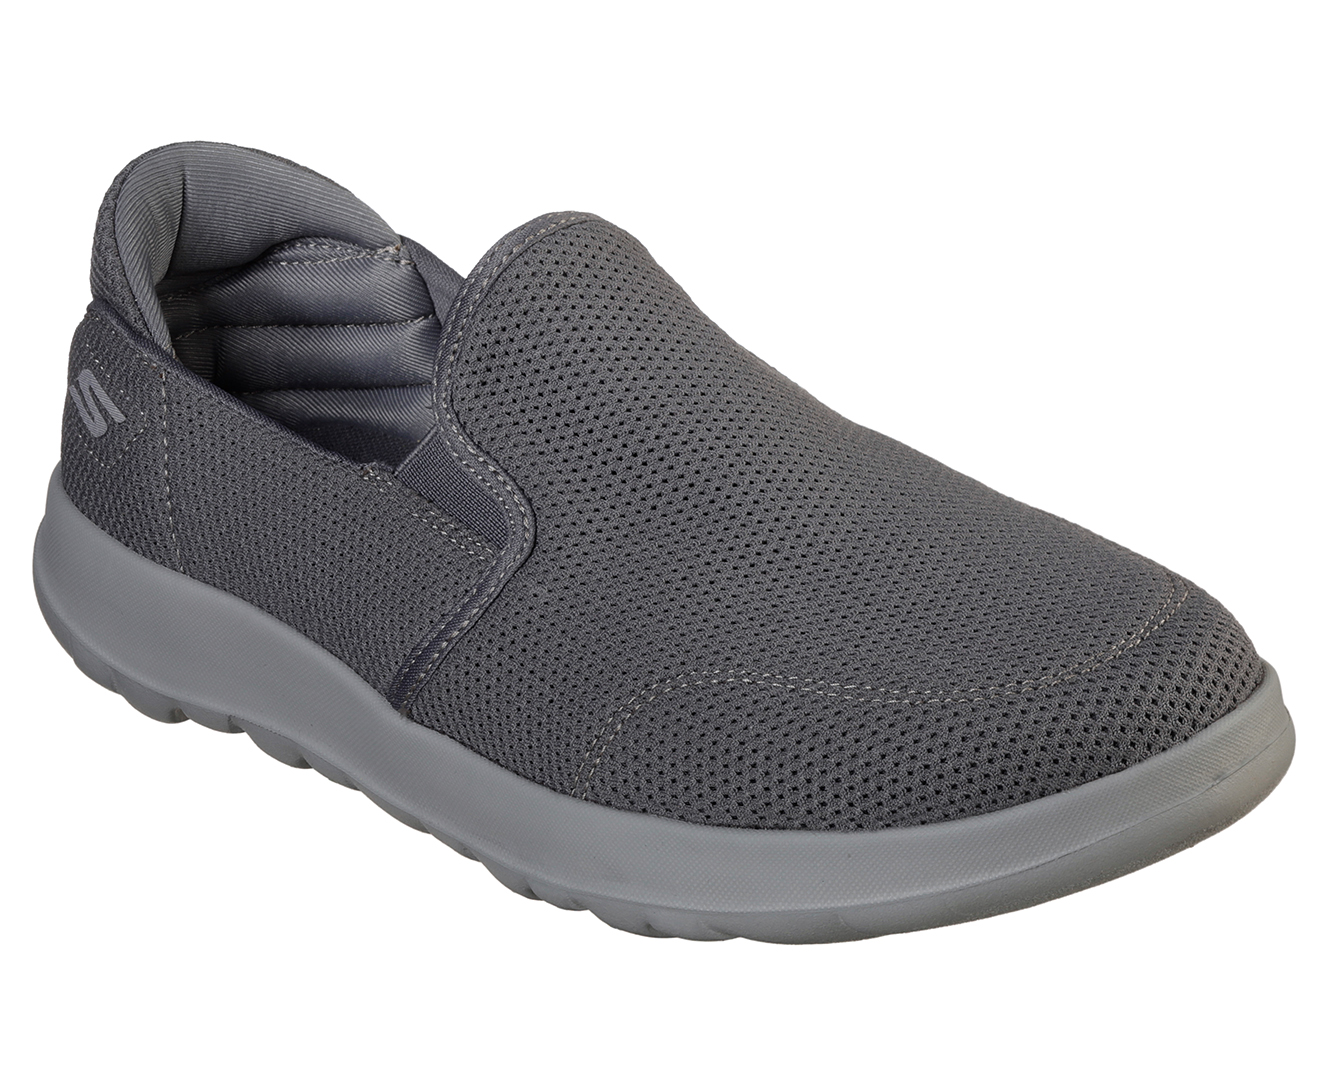 Skechers Men's Adapt Ultra Leisure Slip-On Shoe - Charcoal | Catch.co.nz